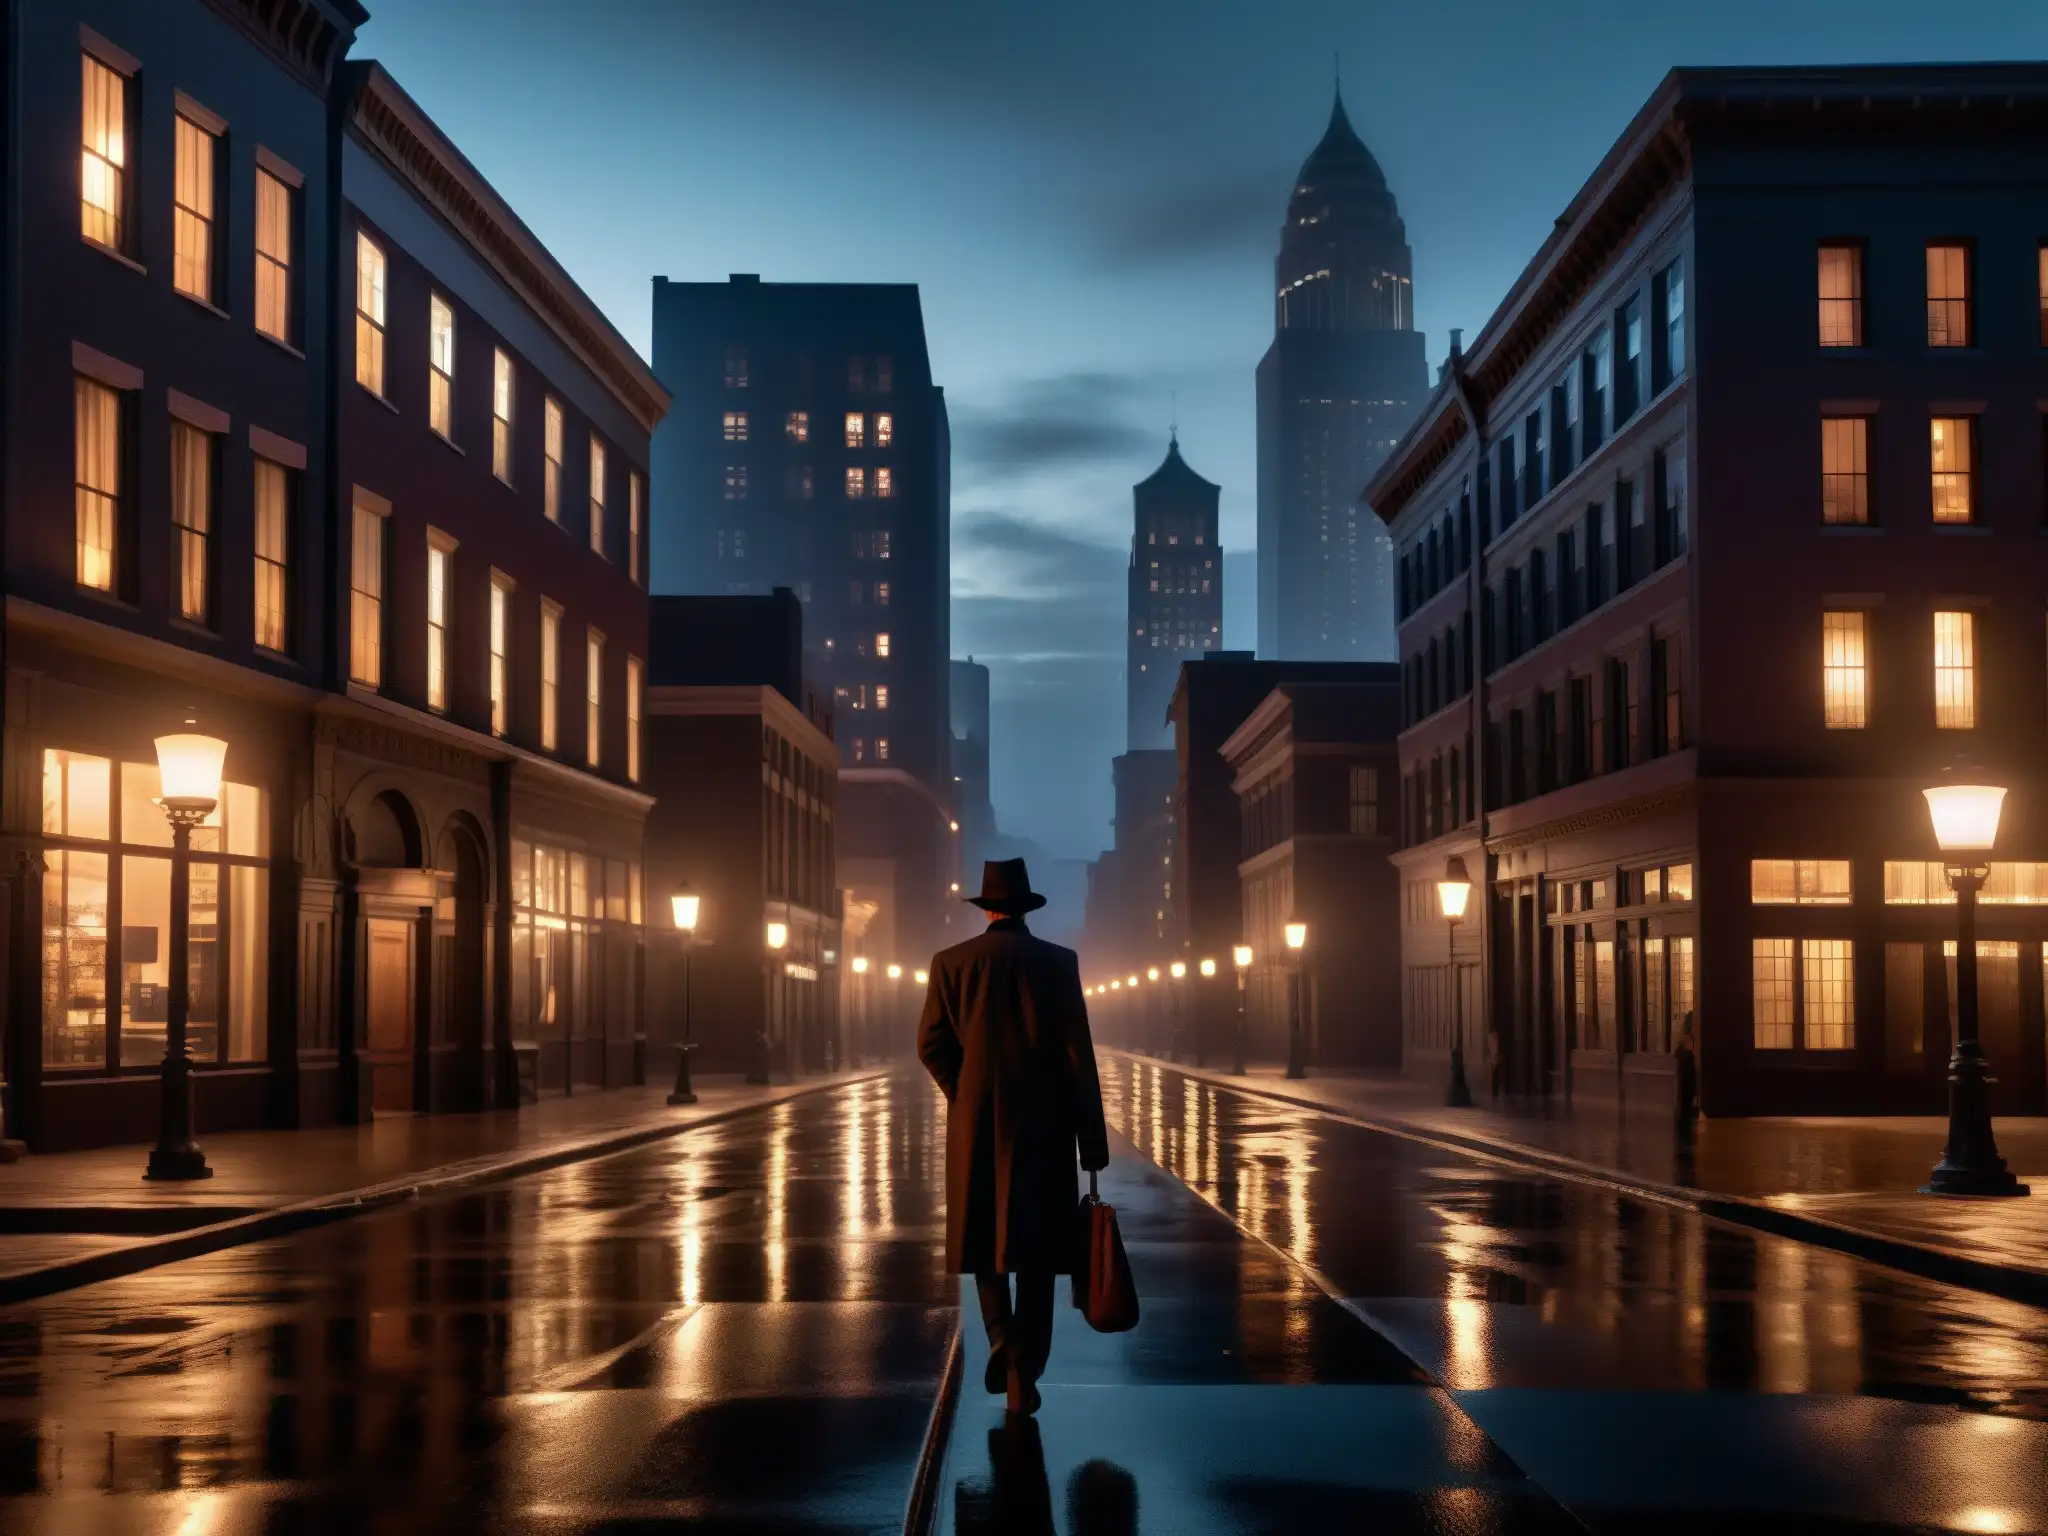 Una calle oscura de la ciudad de noche, con edificios altos y sombríos que proyectan una atmósfera misteriosa